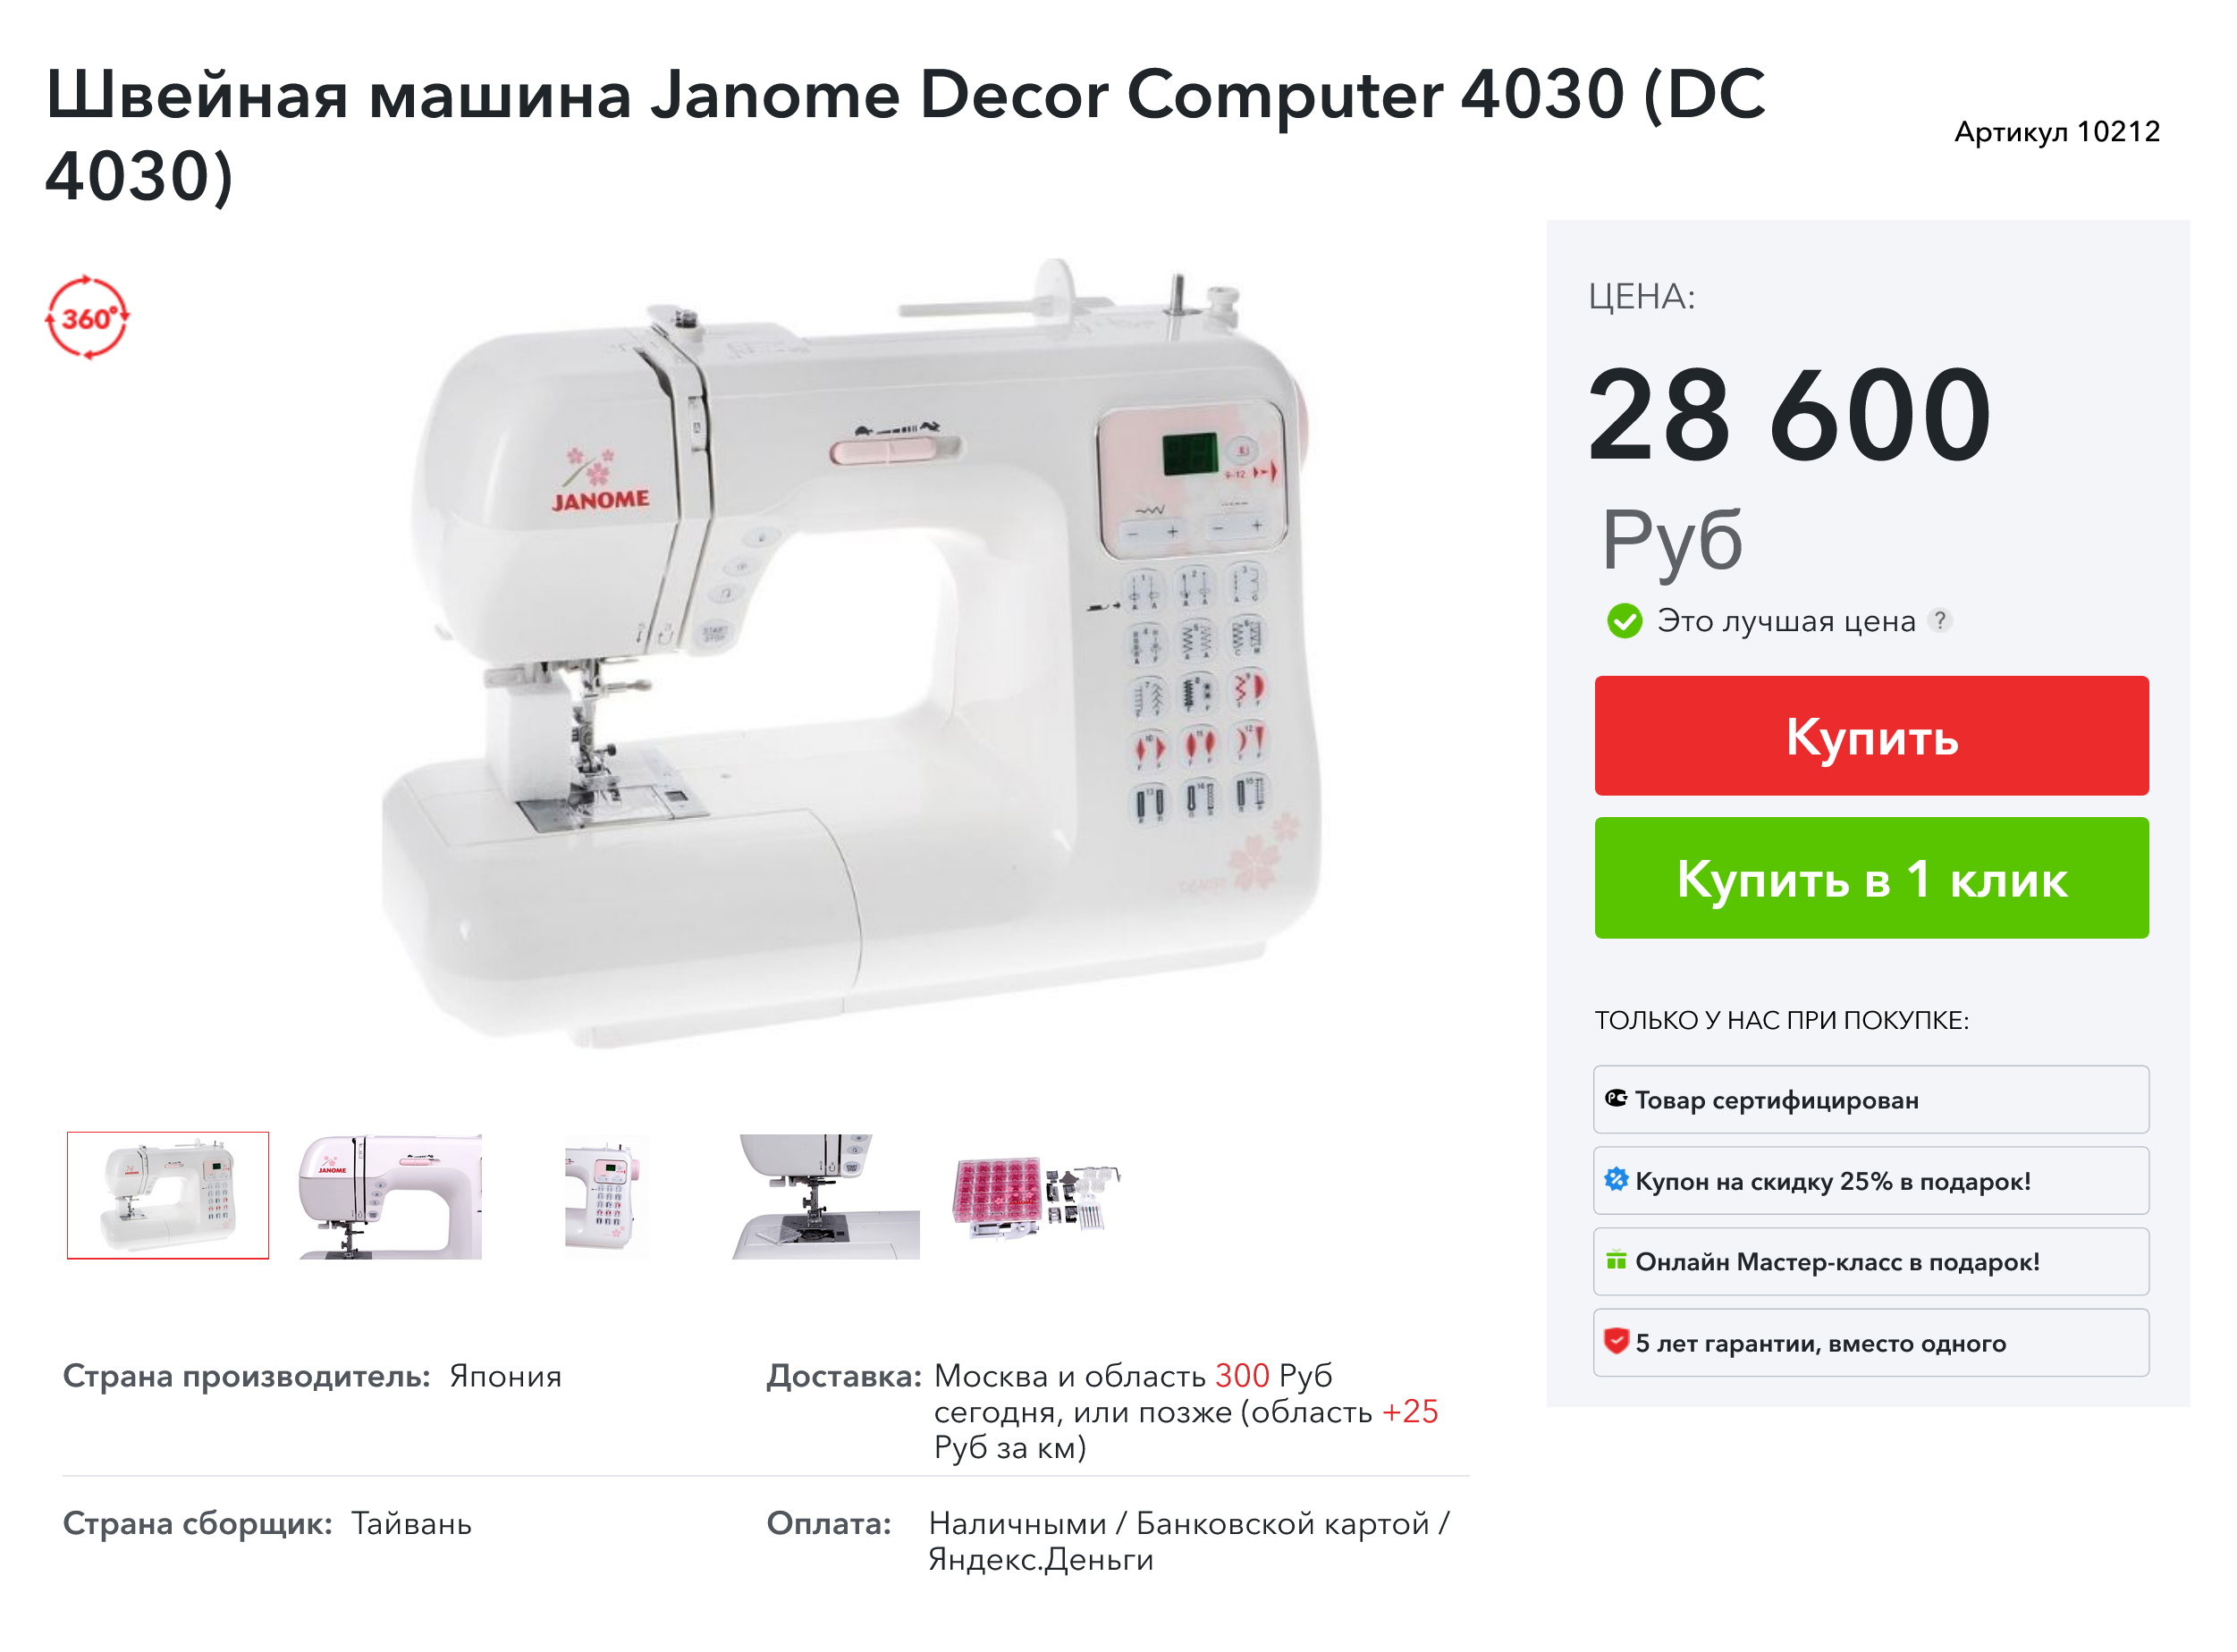 В 2023 году швейная машинка Janome DC 4030 стоит уже 28 600 ₽. Источник: textiletorg.ru